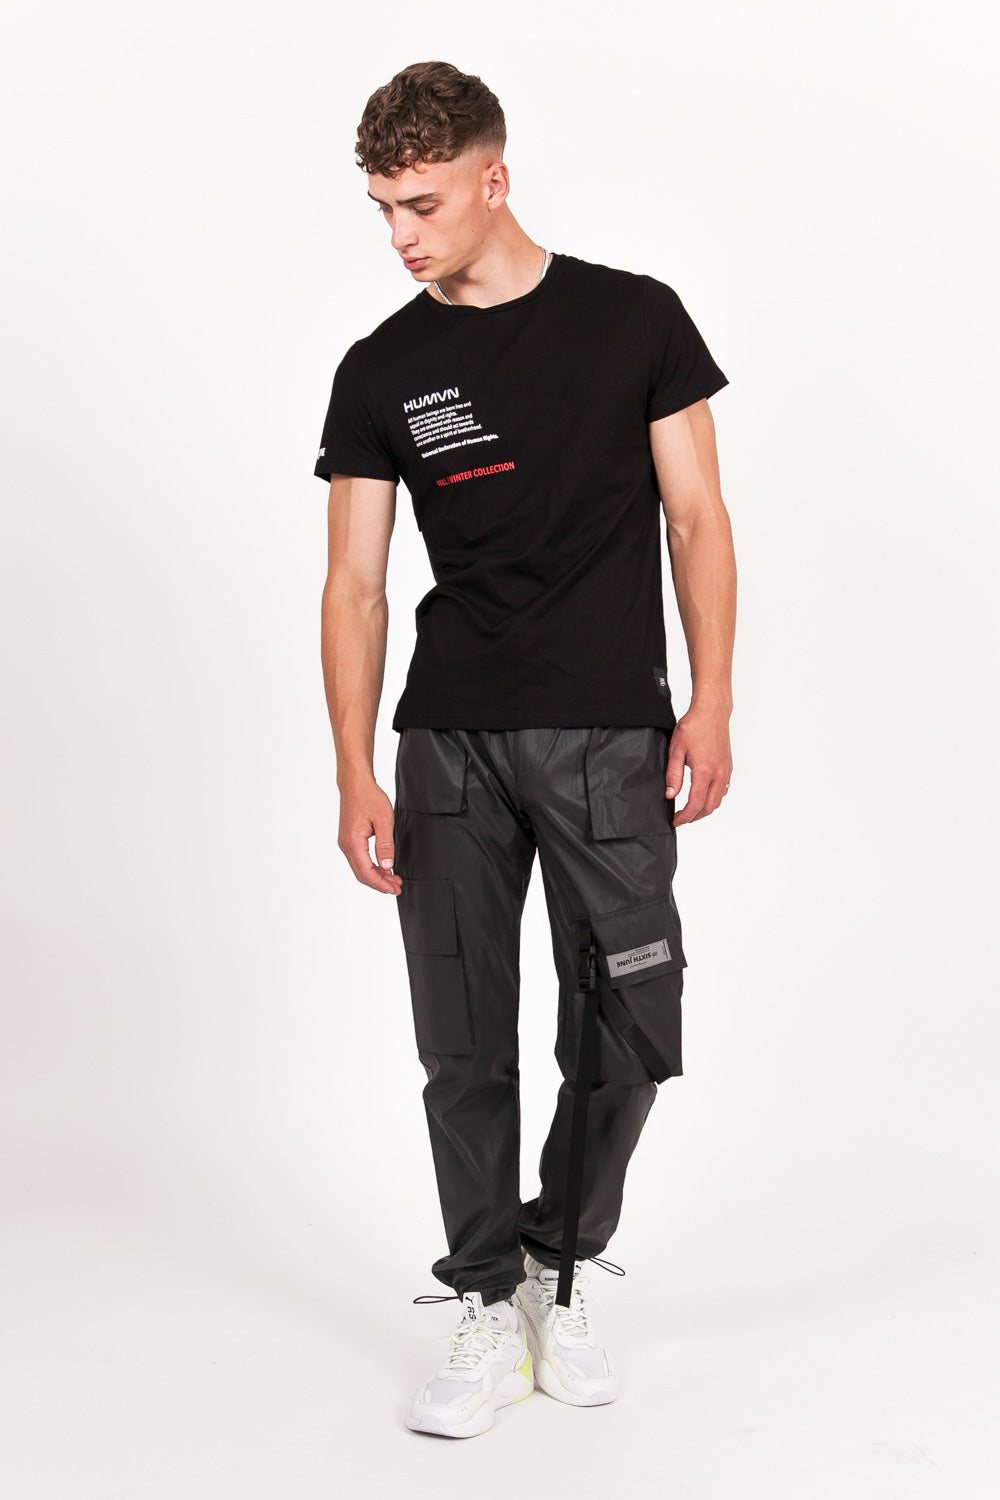 Sixth June - T-shirt poche dos réfléchissant noir